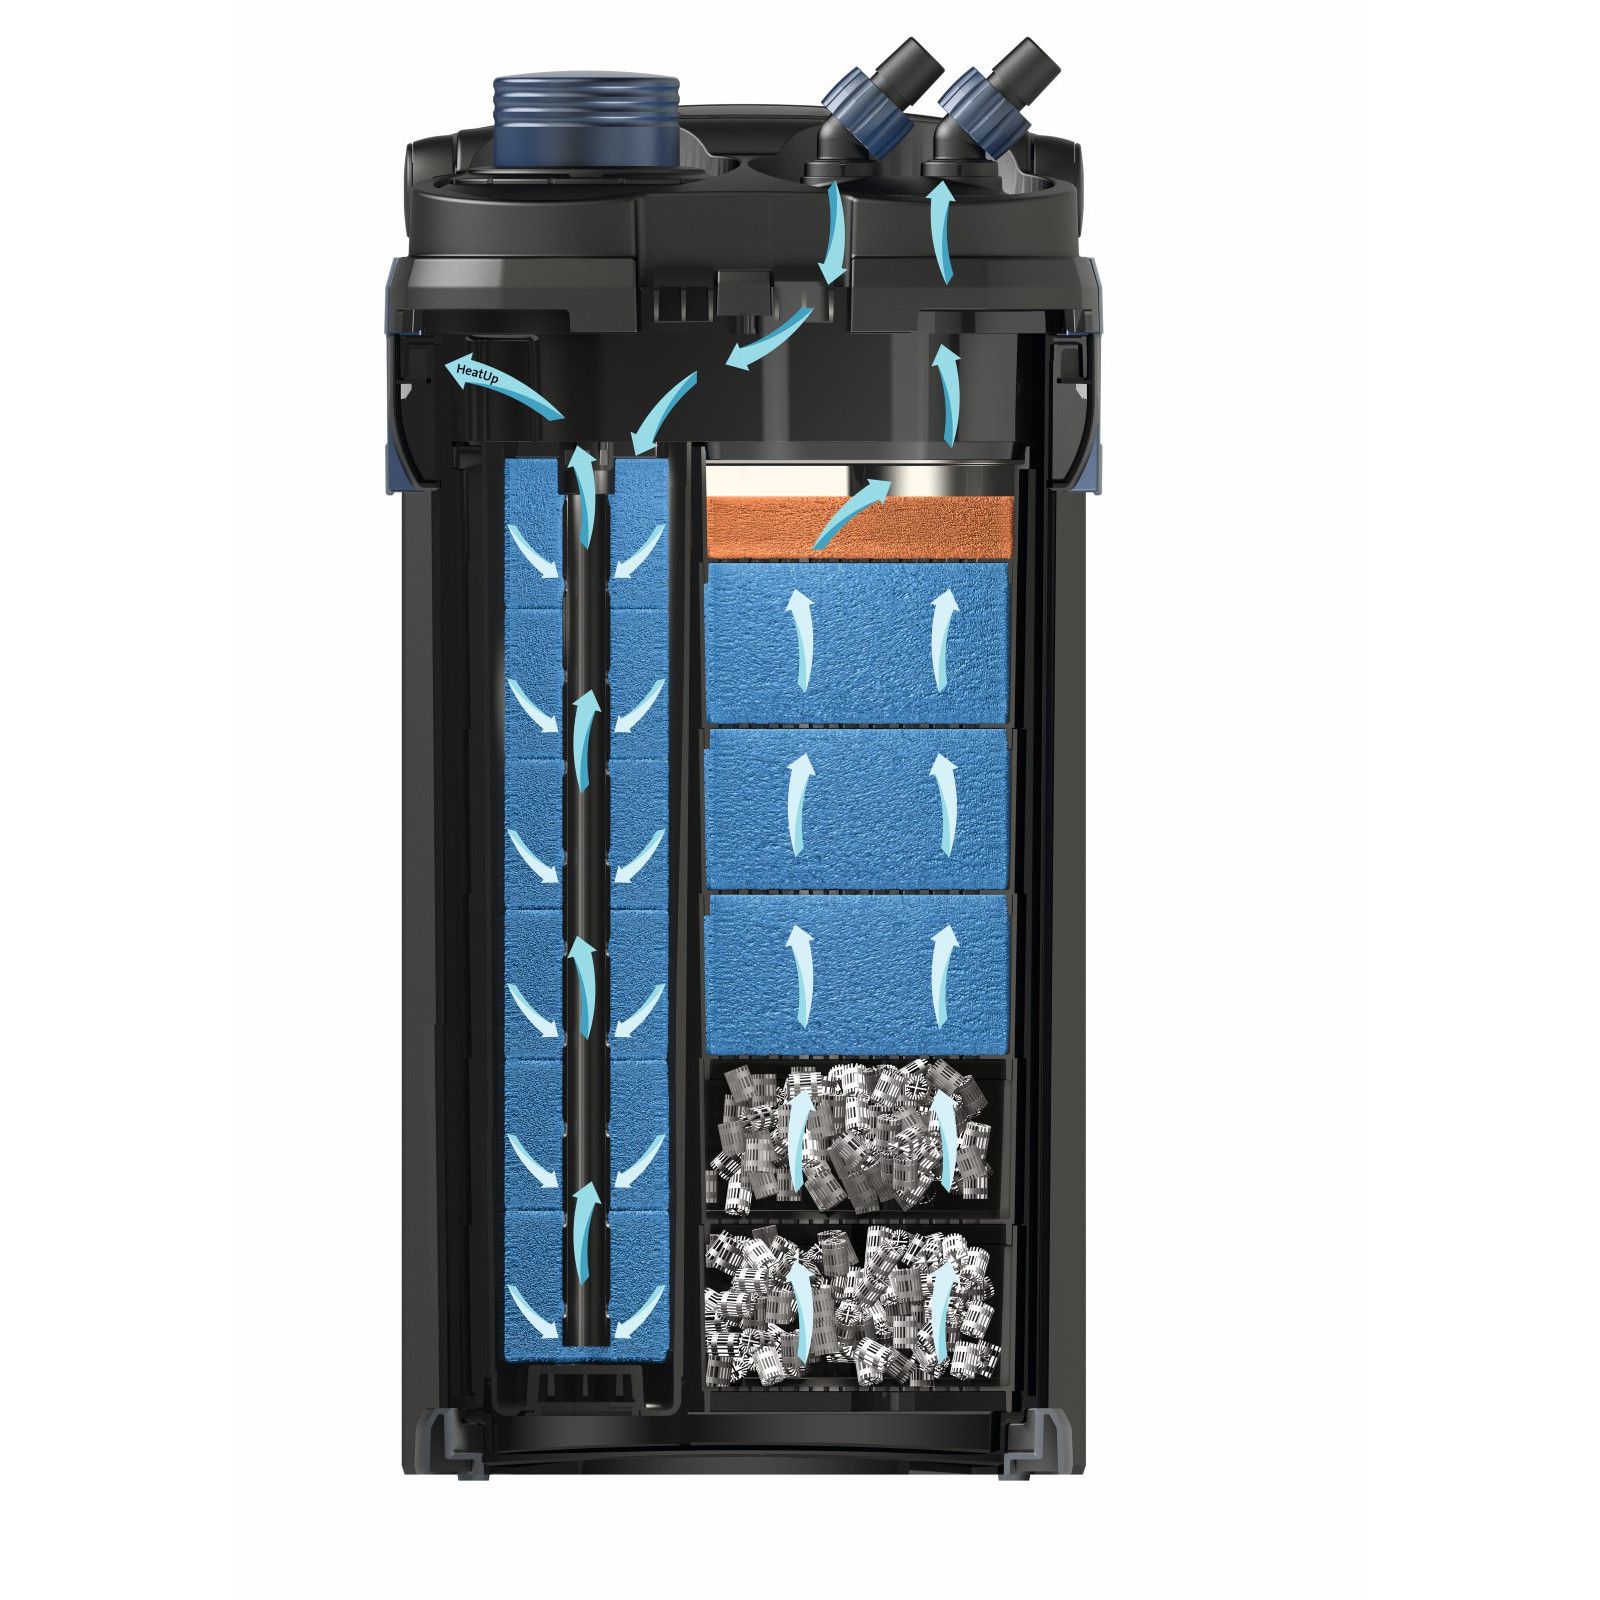 Oase BioMaster Thermo 350 Außenfilter mit Heizer für Aquarien bis 350 L